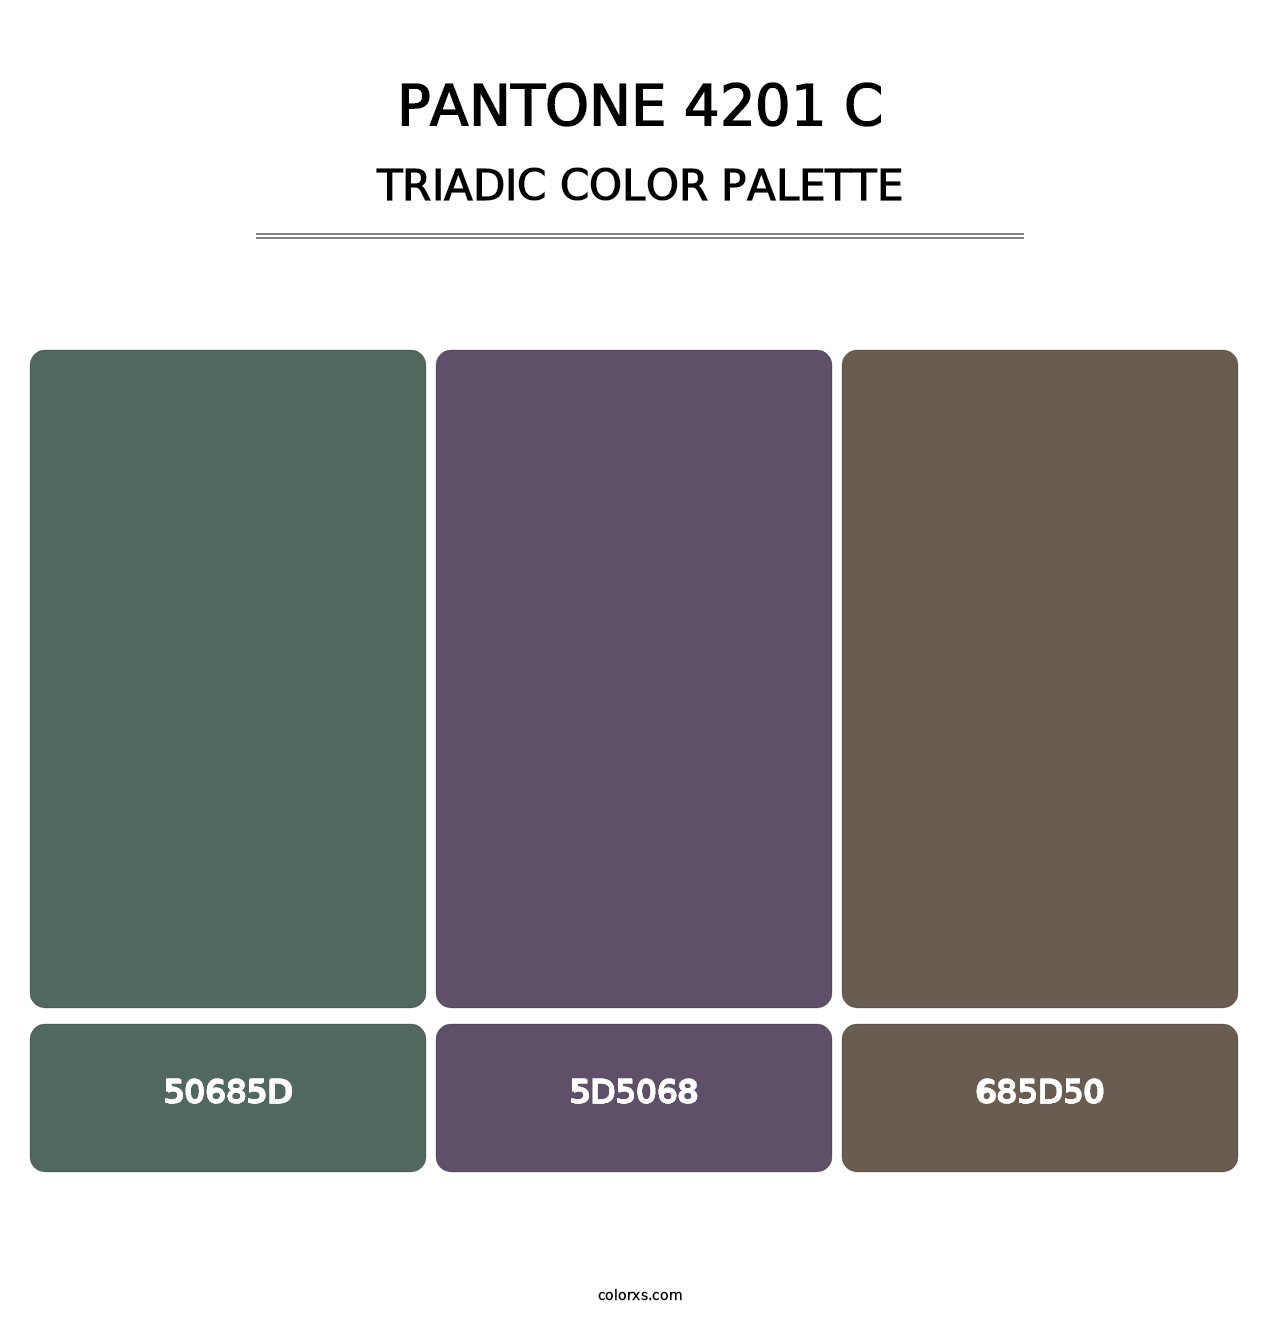 PANTONE 4201 C - Triadic Color Palette